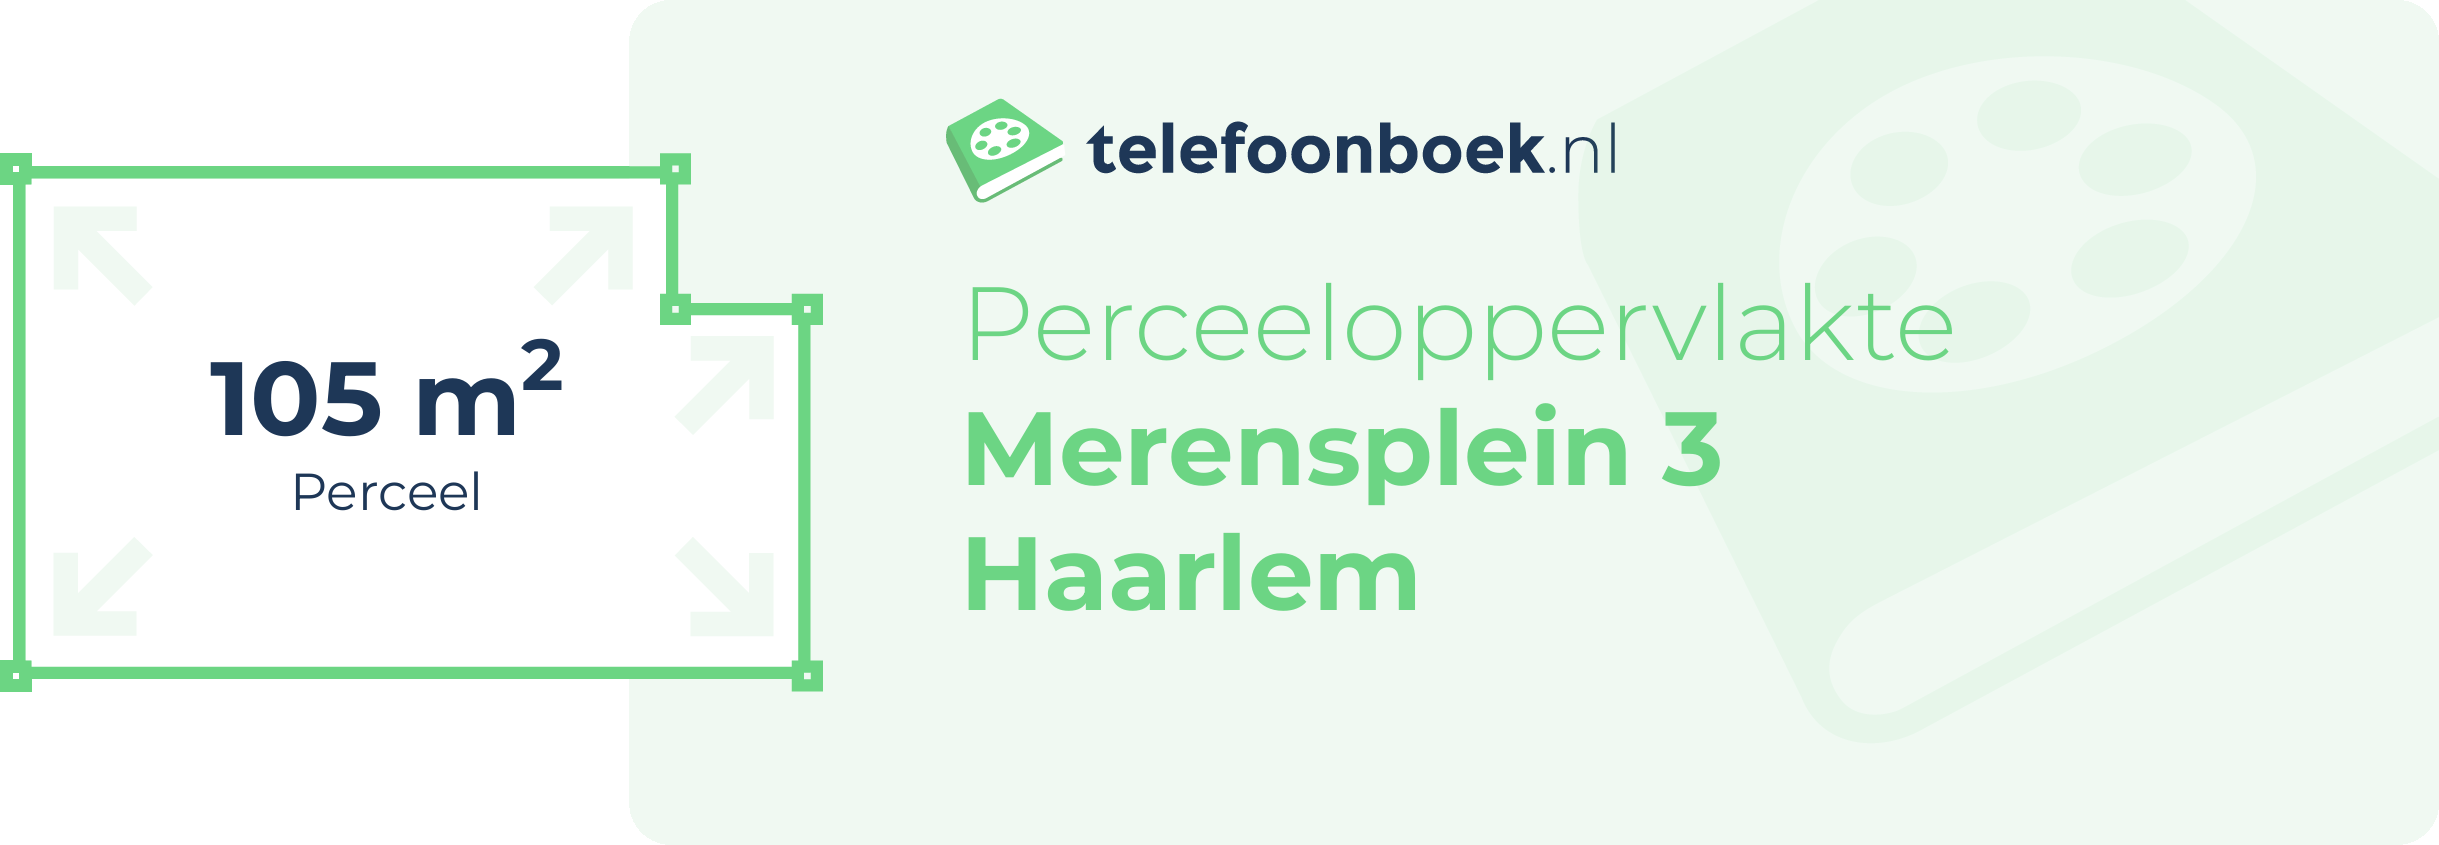 Perceeloppervlakte Merensplein 3 Haarlem